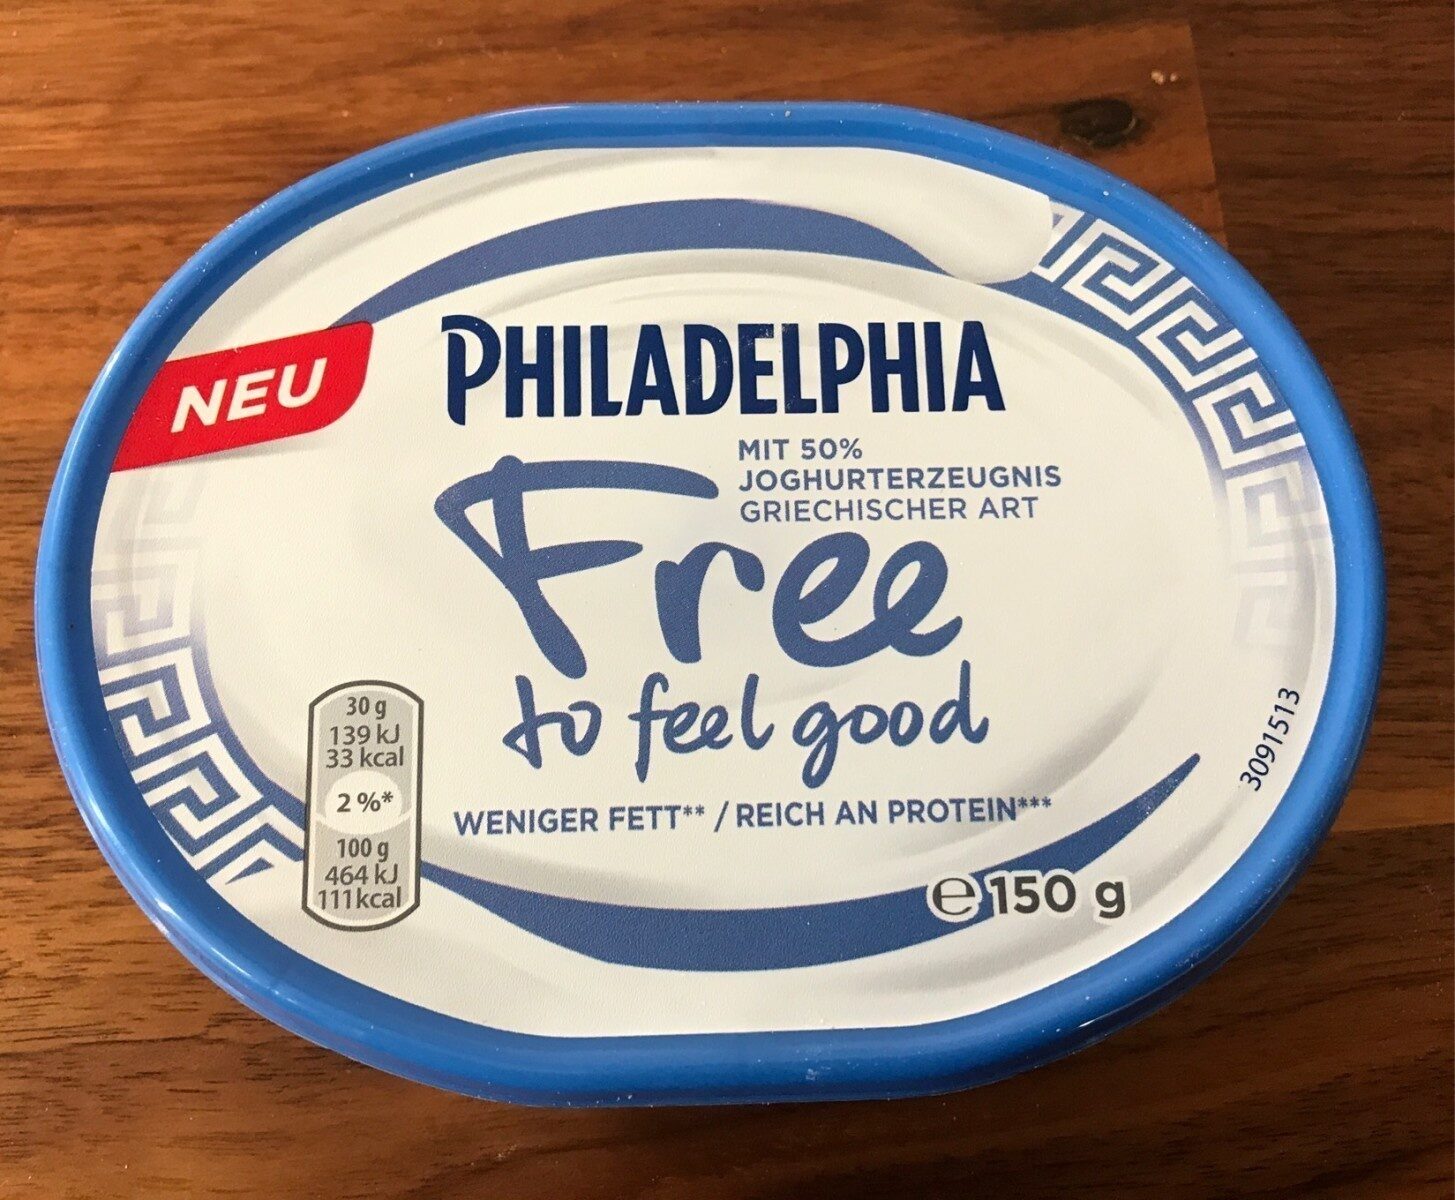 Philadelphia Free to feel good - Produkt - en